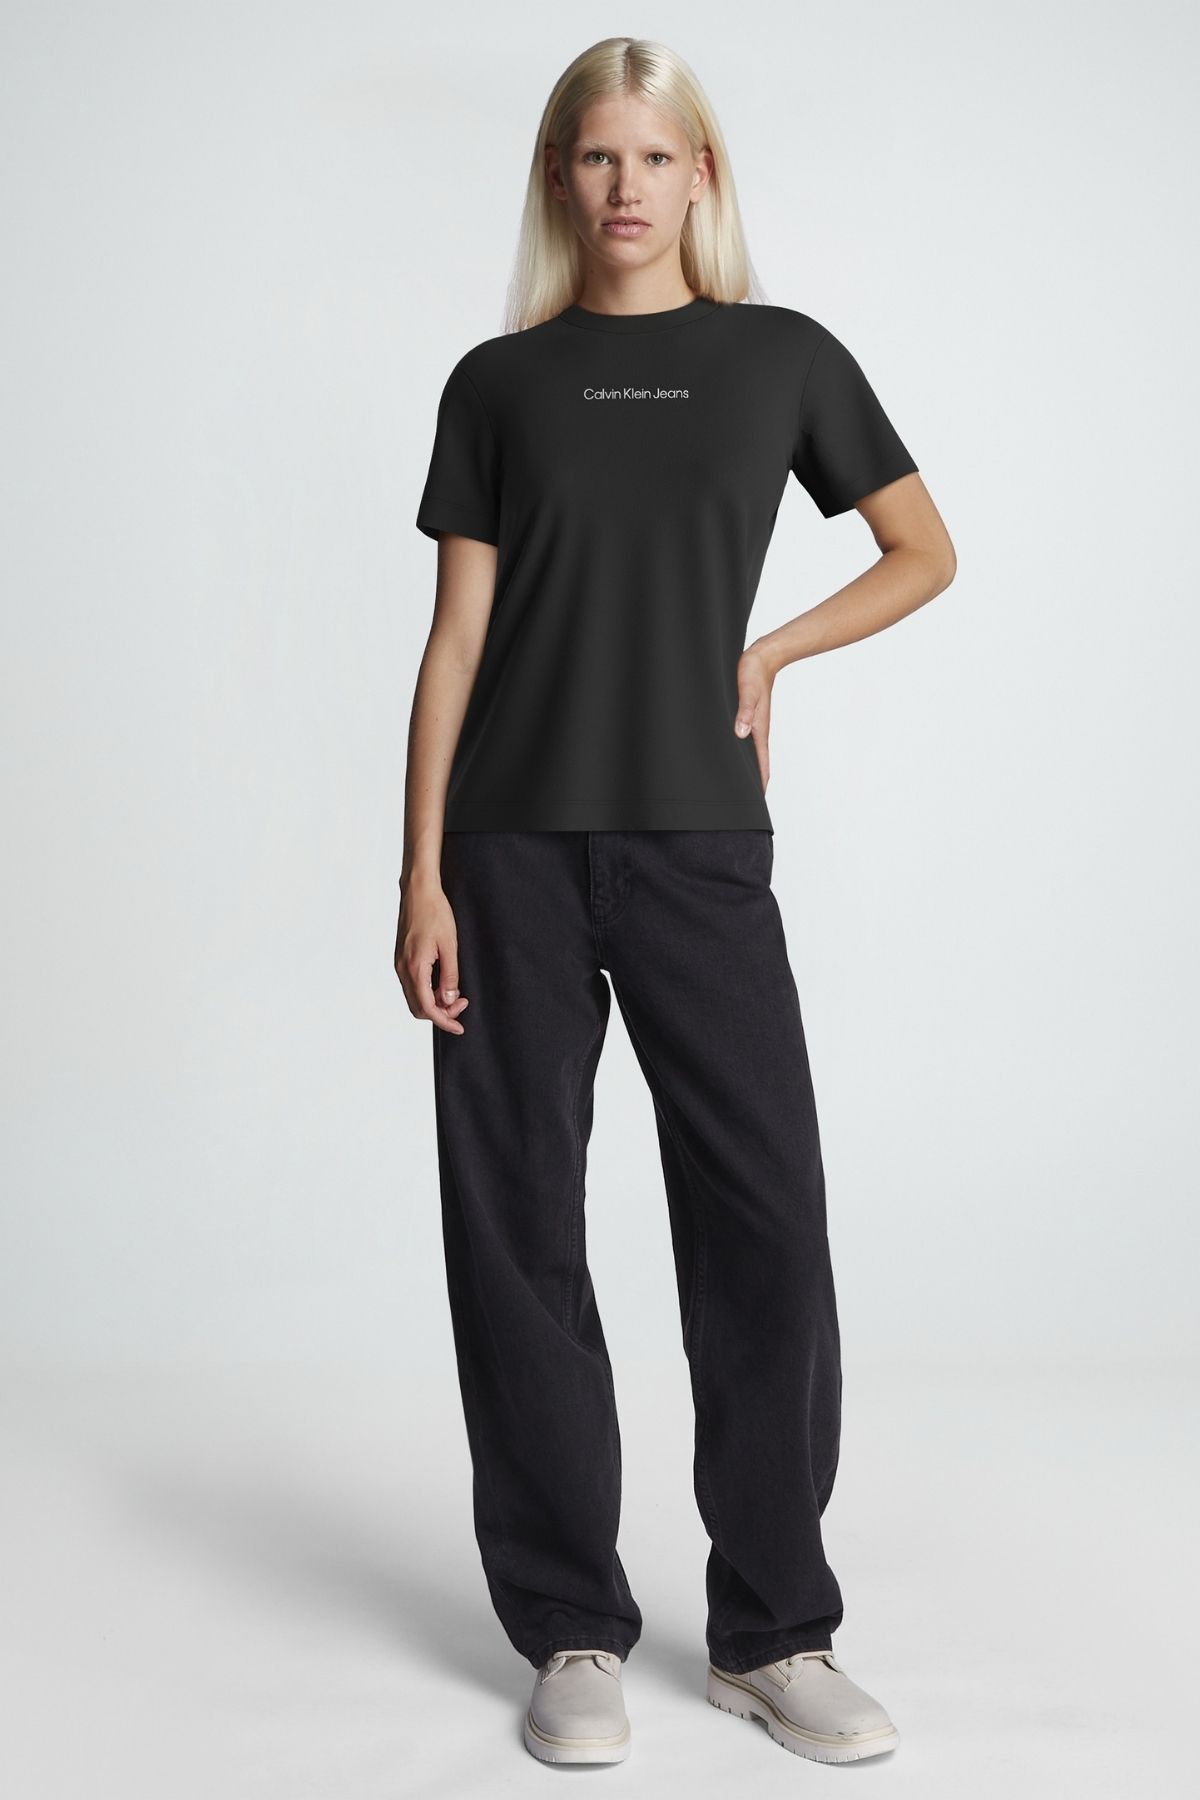 Calvin Klein Kadın Marka Logolu Günlük Kullanıma Uygun Siyah T-shirt J20j221065-beh